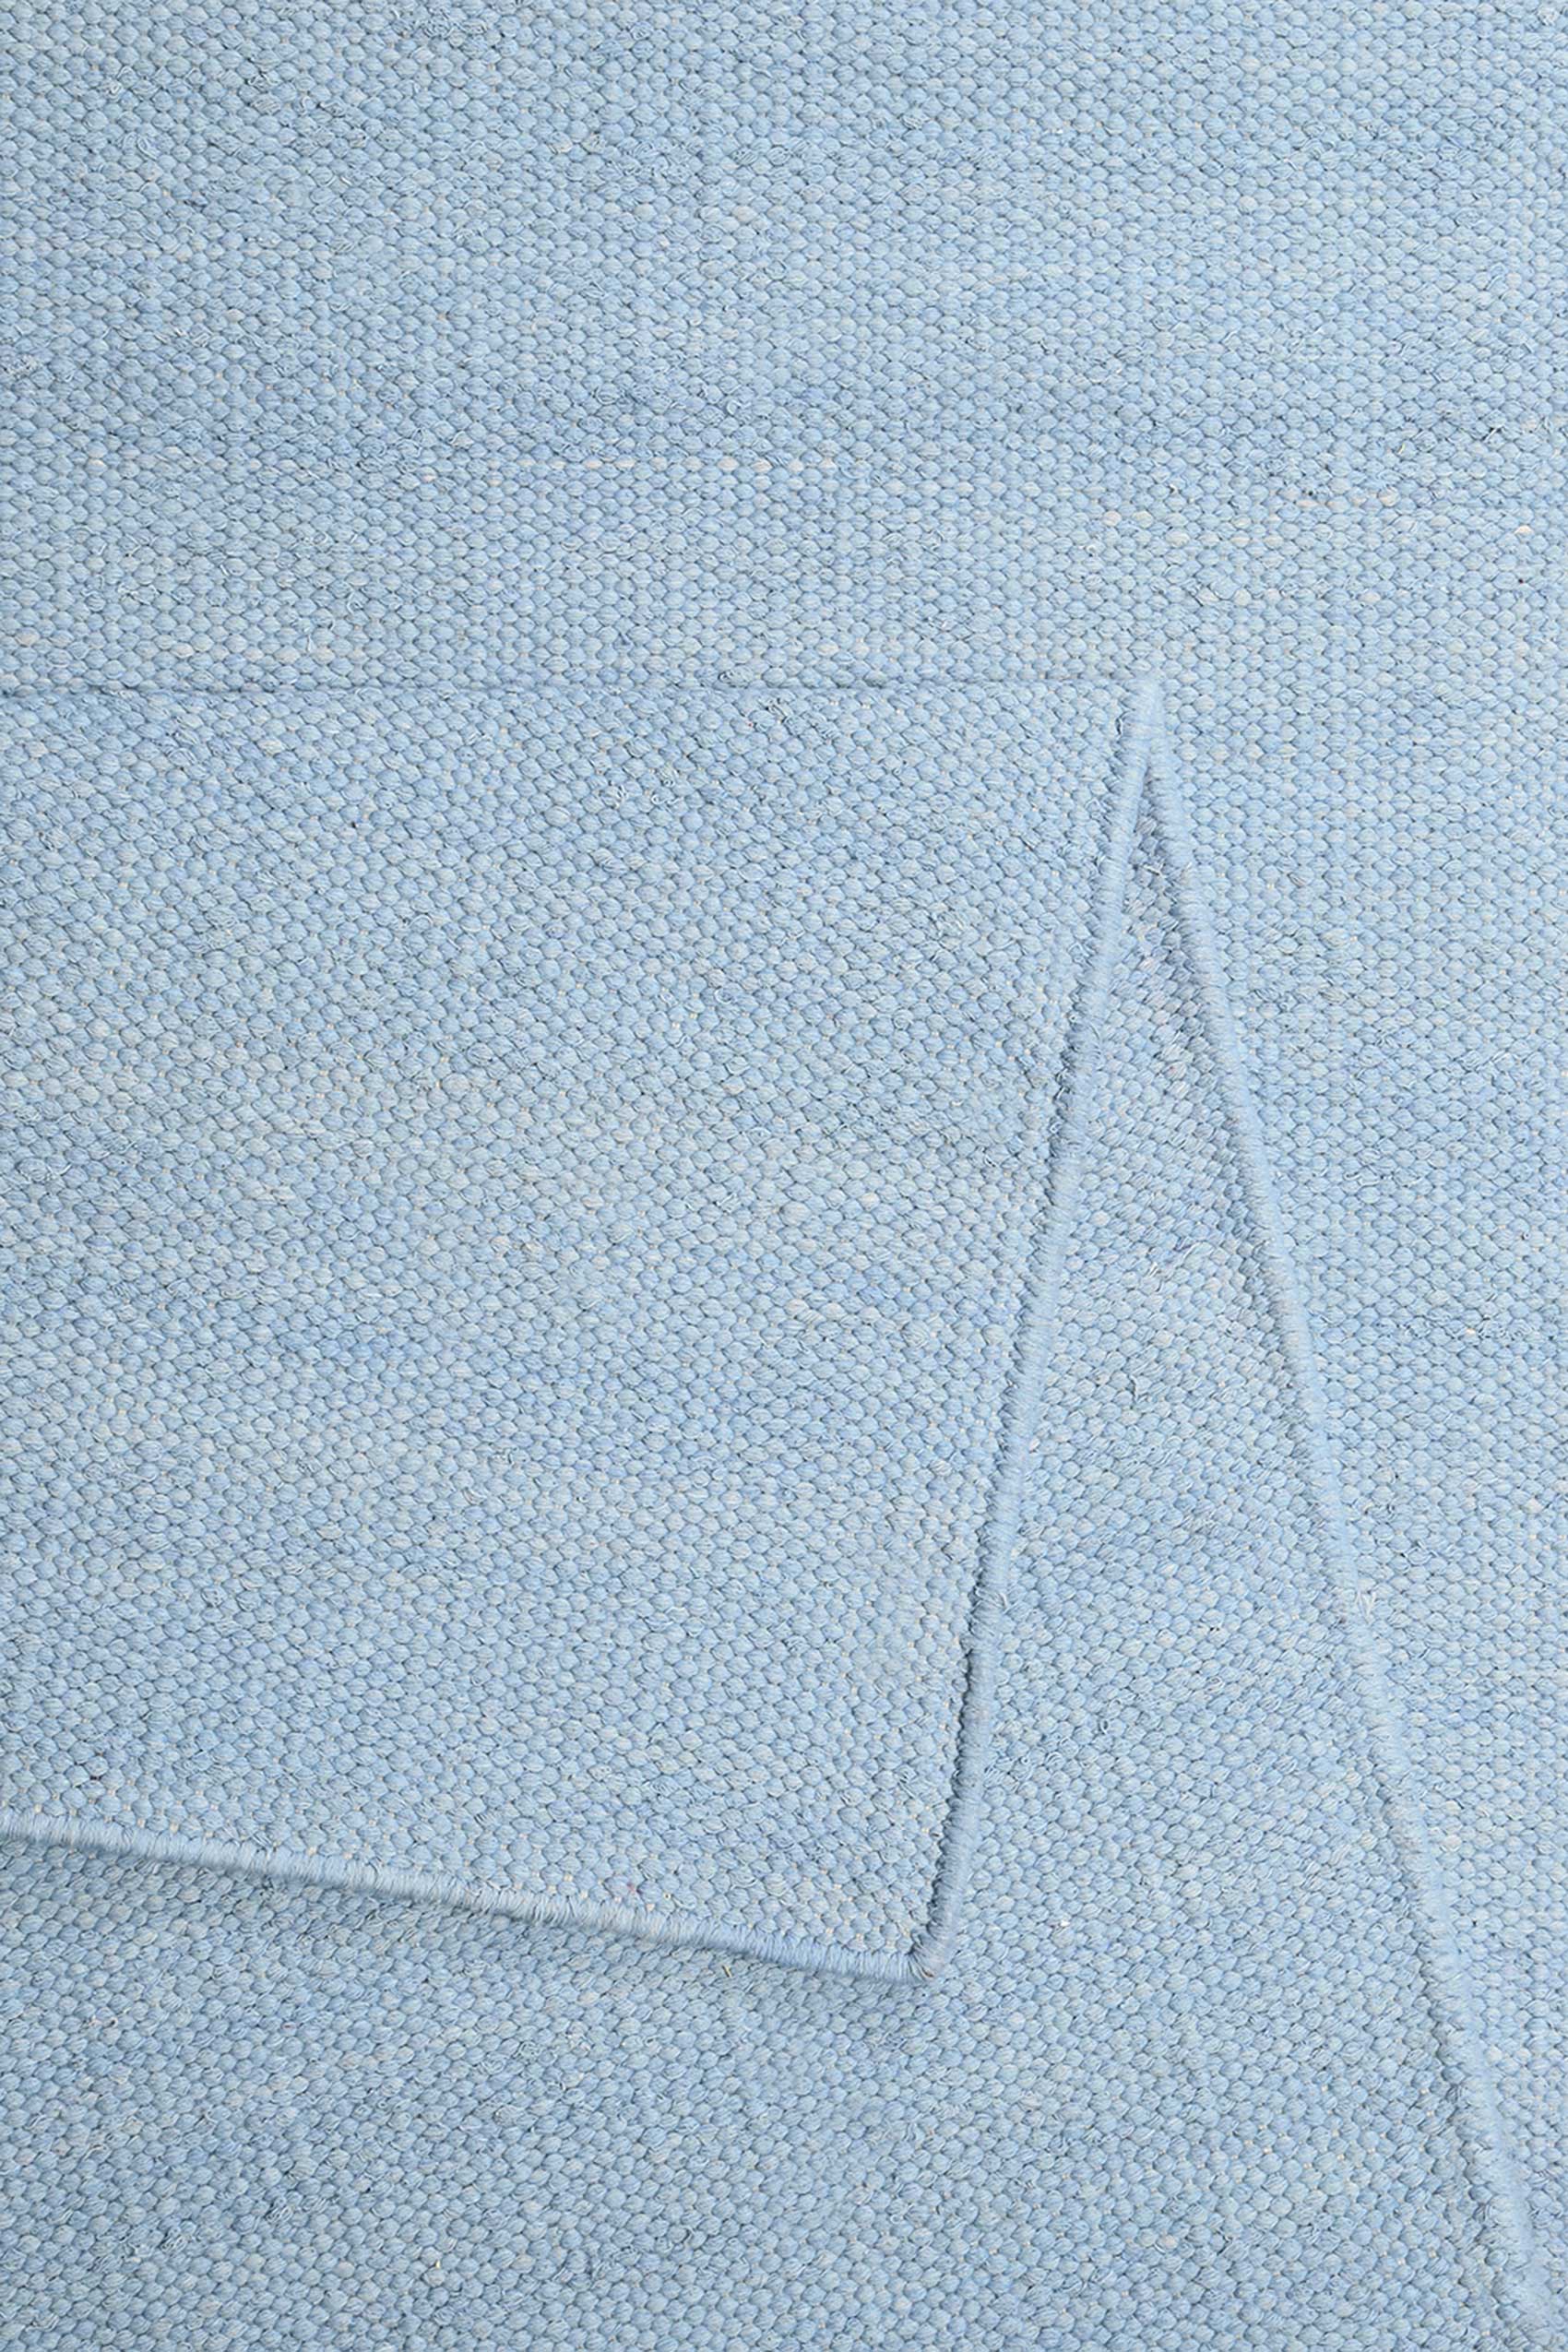 Esprit Kurzflor Teppich Hellblau aus Baumwolle » Rainbow Kelim « - Ansicht 3